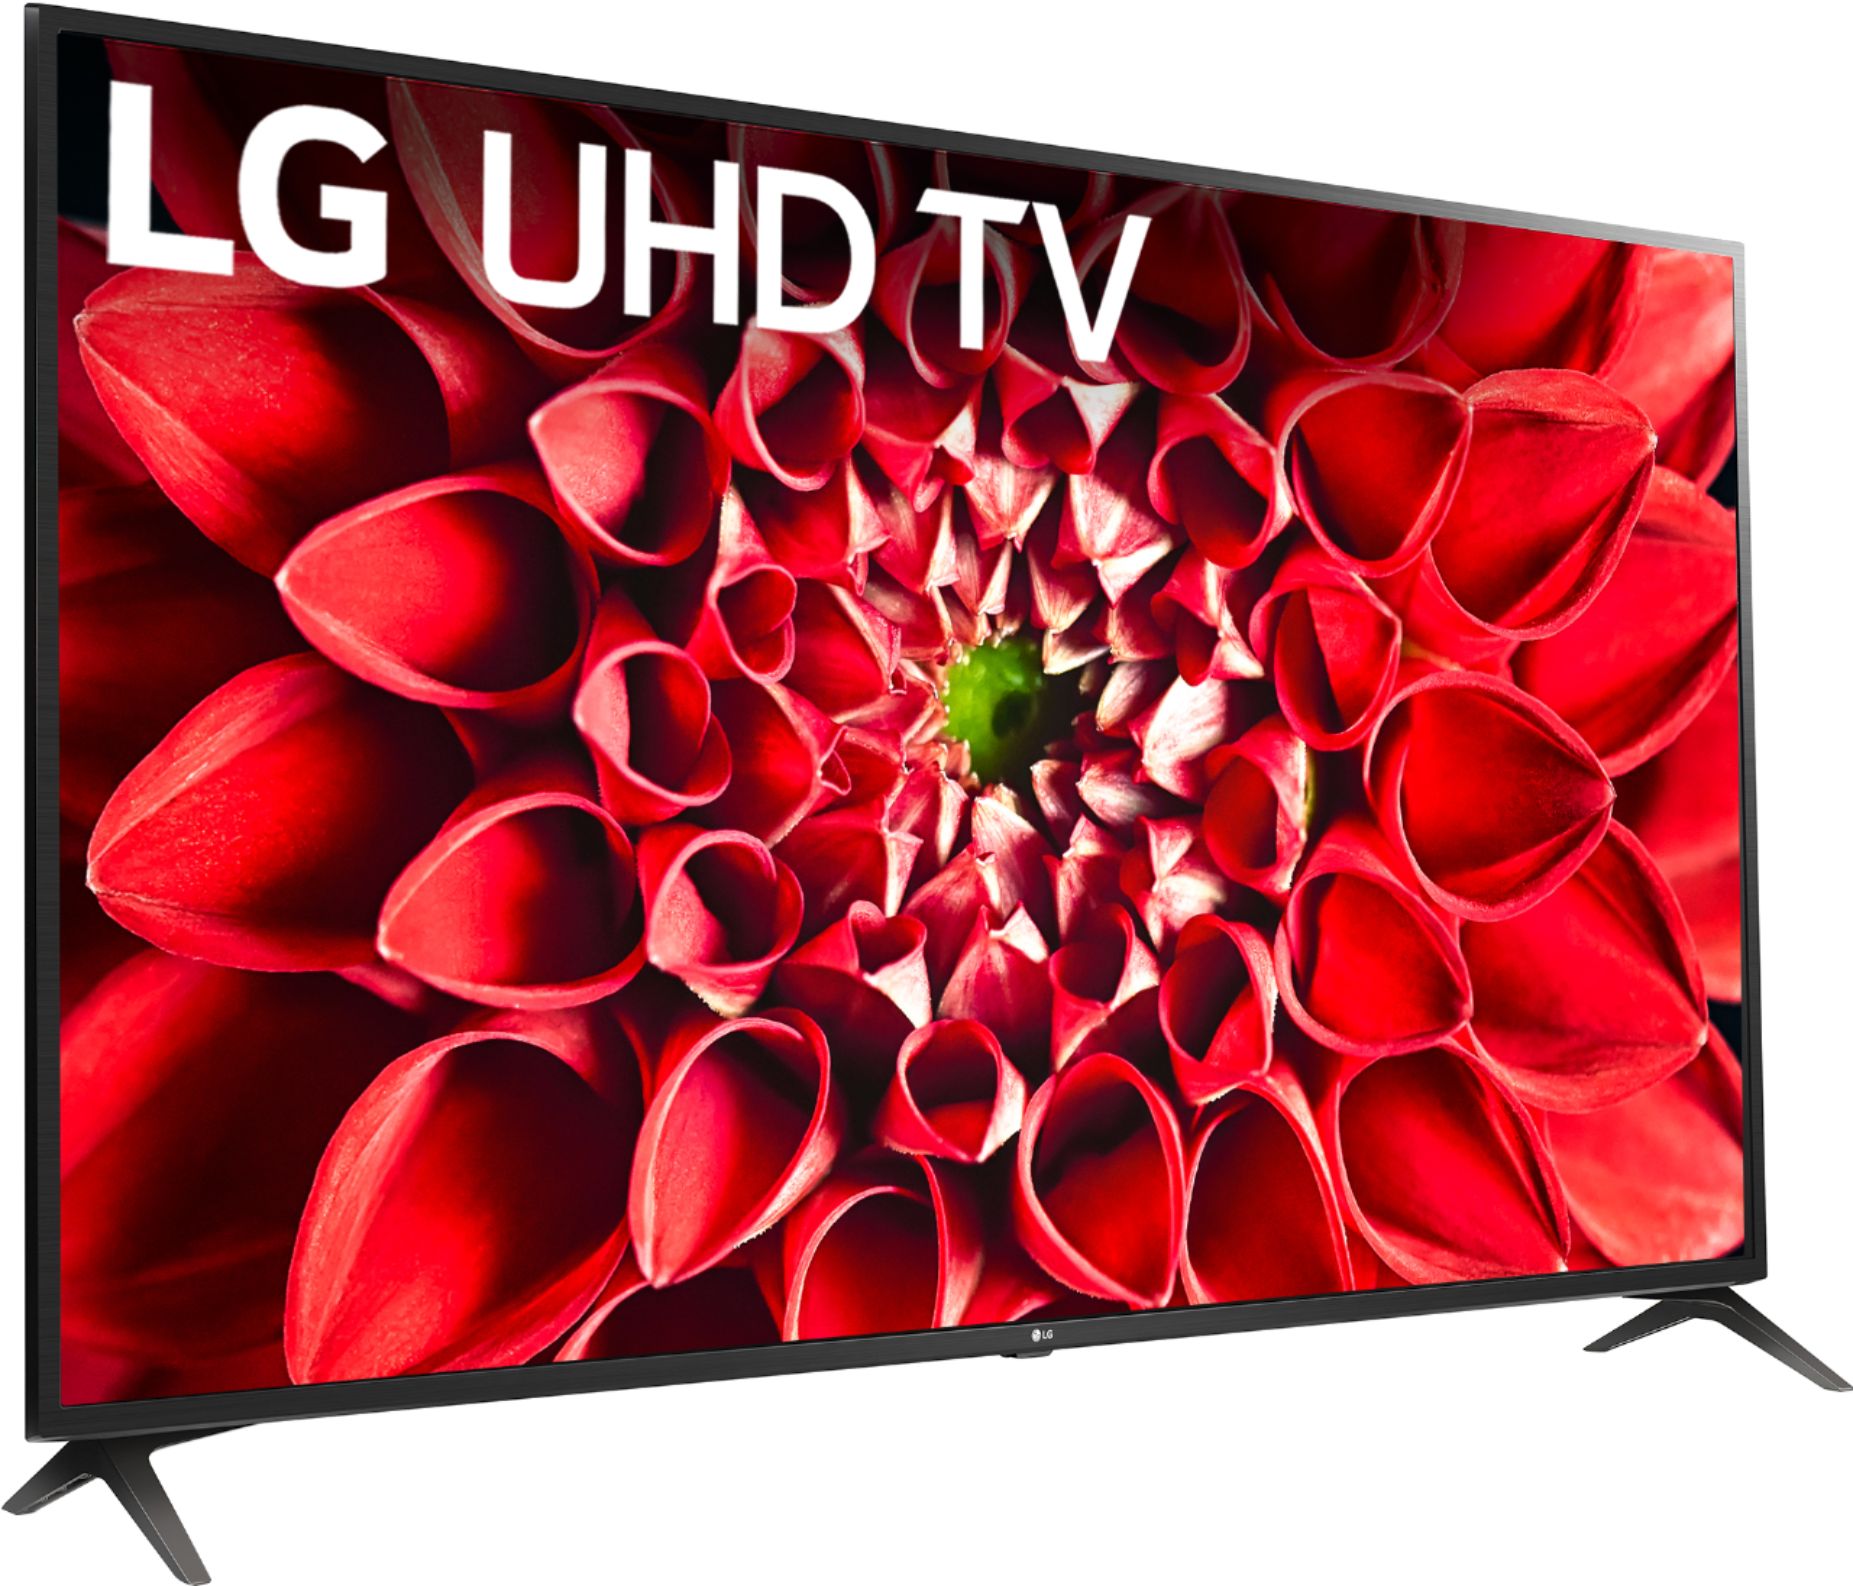 LG 70" UN7070 Series LED 4K Smart webOS TV 70UN7070PUA - Best Buy